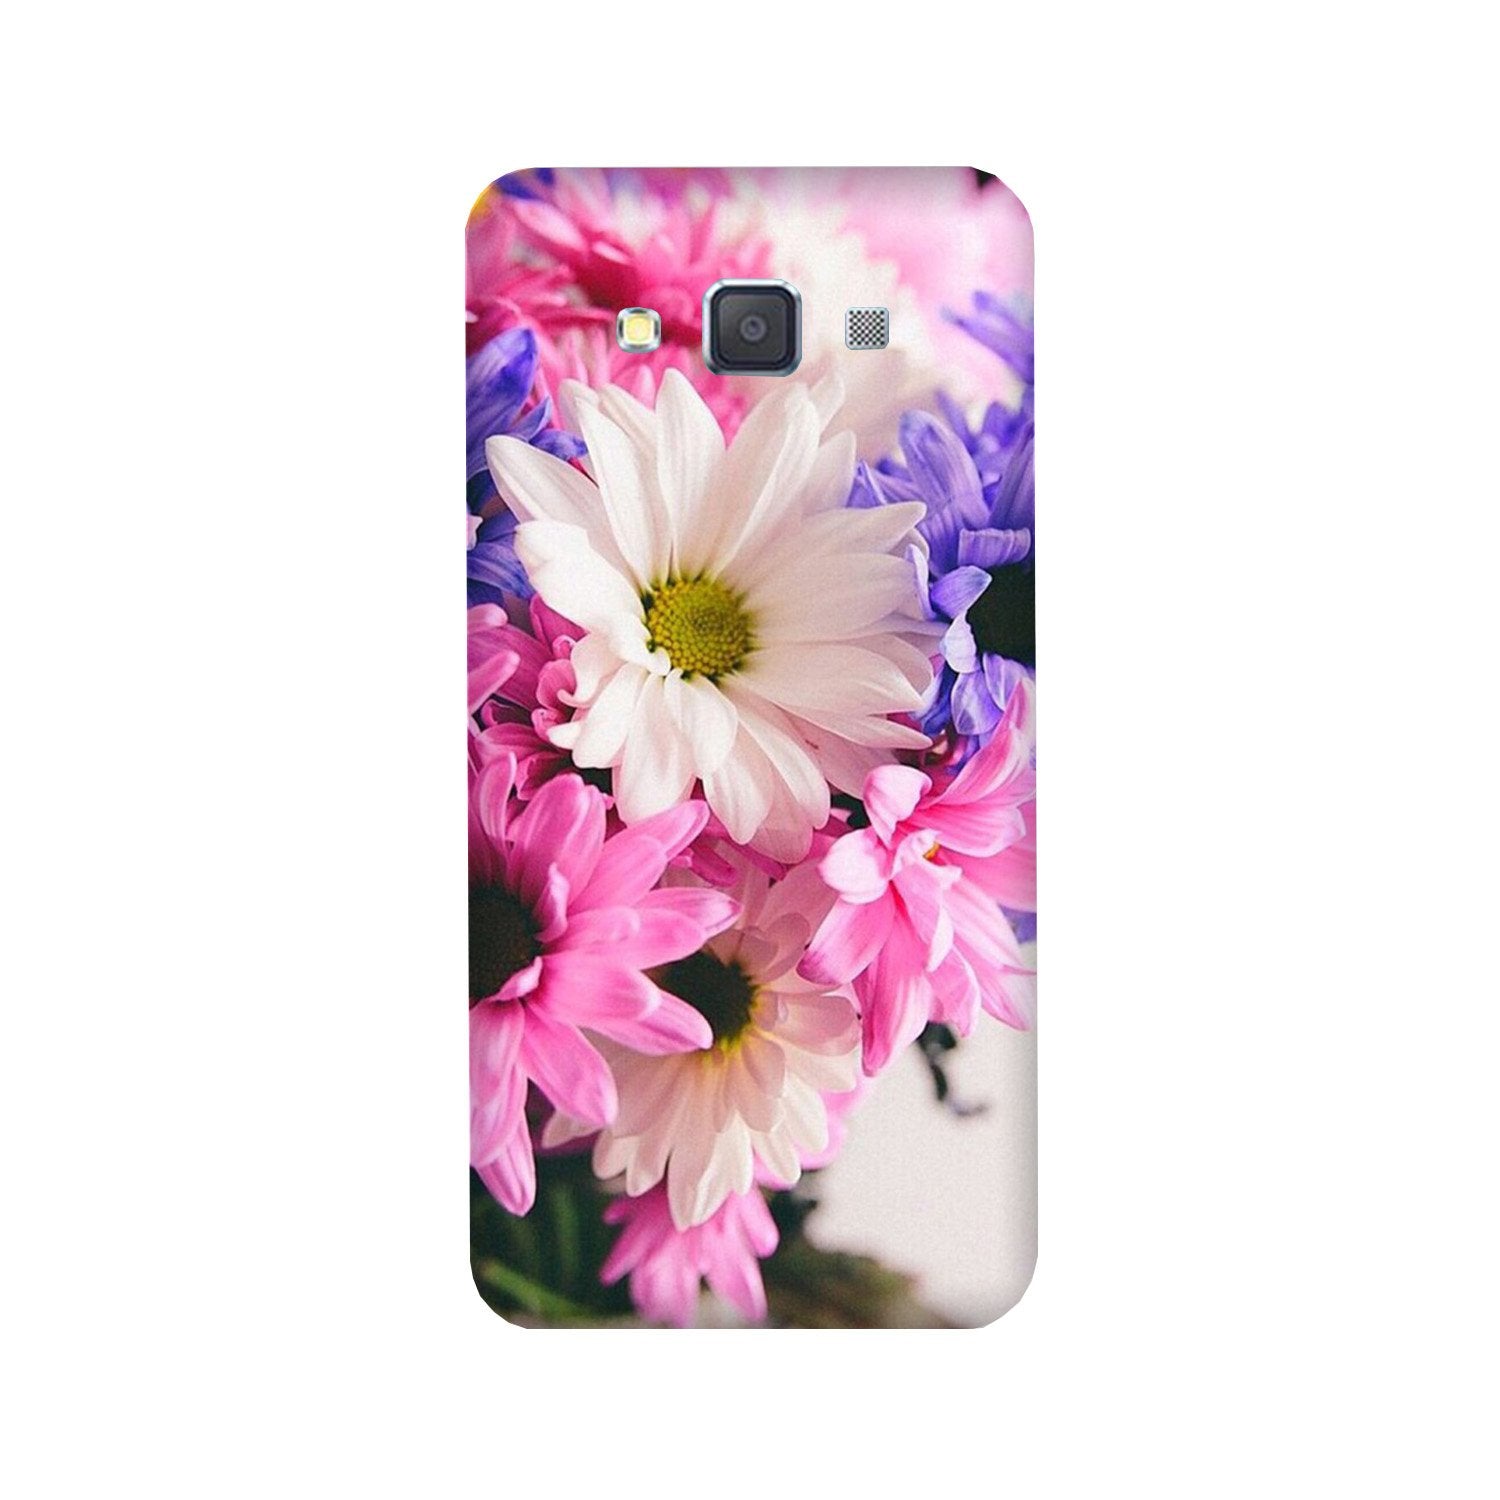 Coloful Daisy Case for Galaxy A5 (2015)